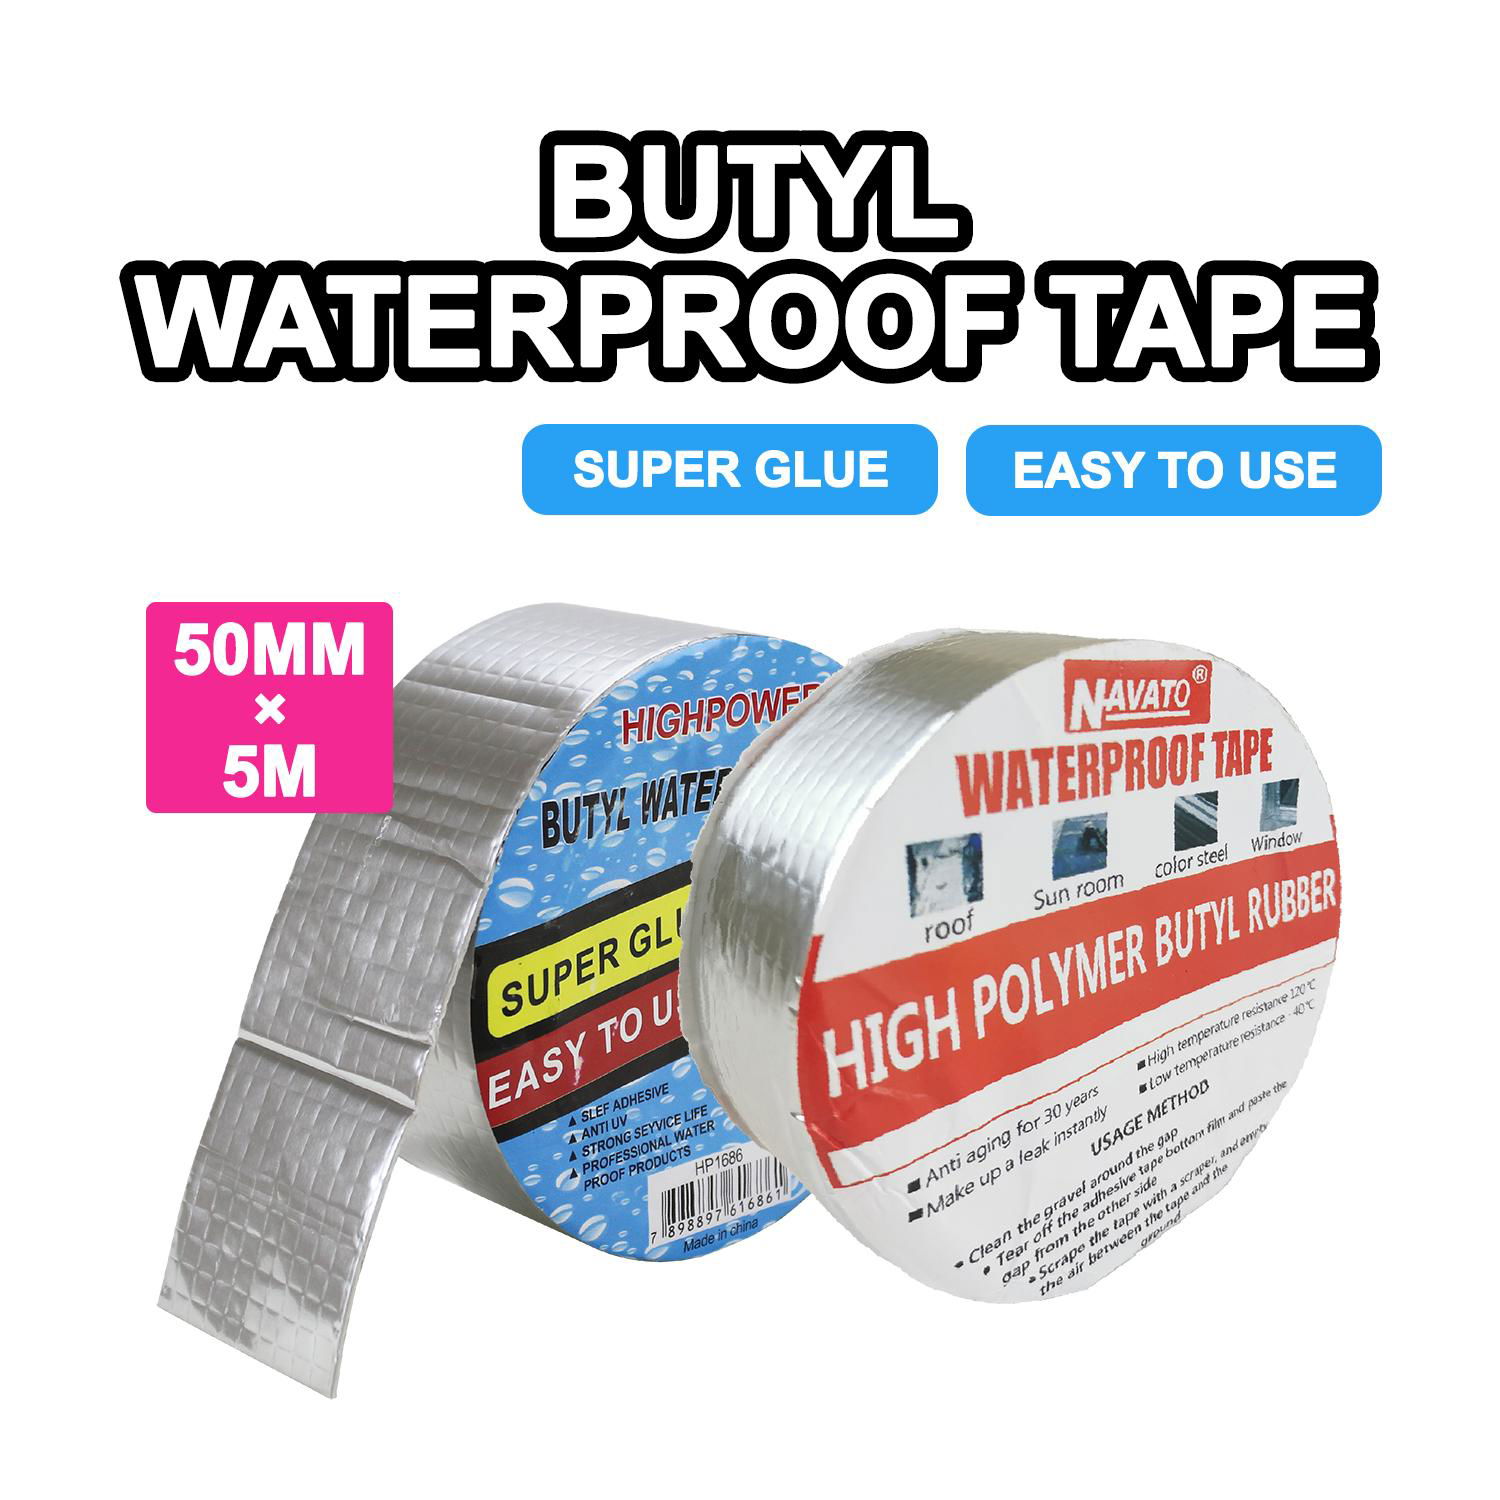 Waterproof tape butyl tape 2